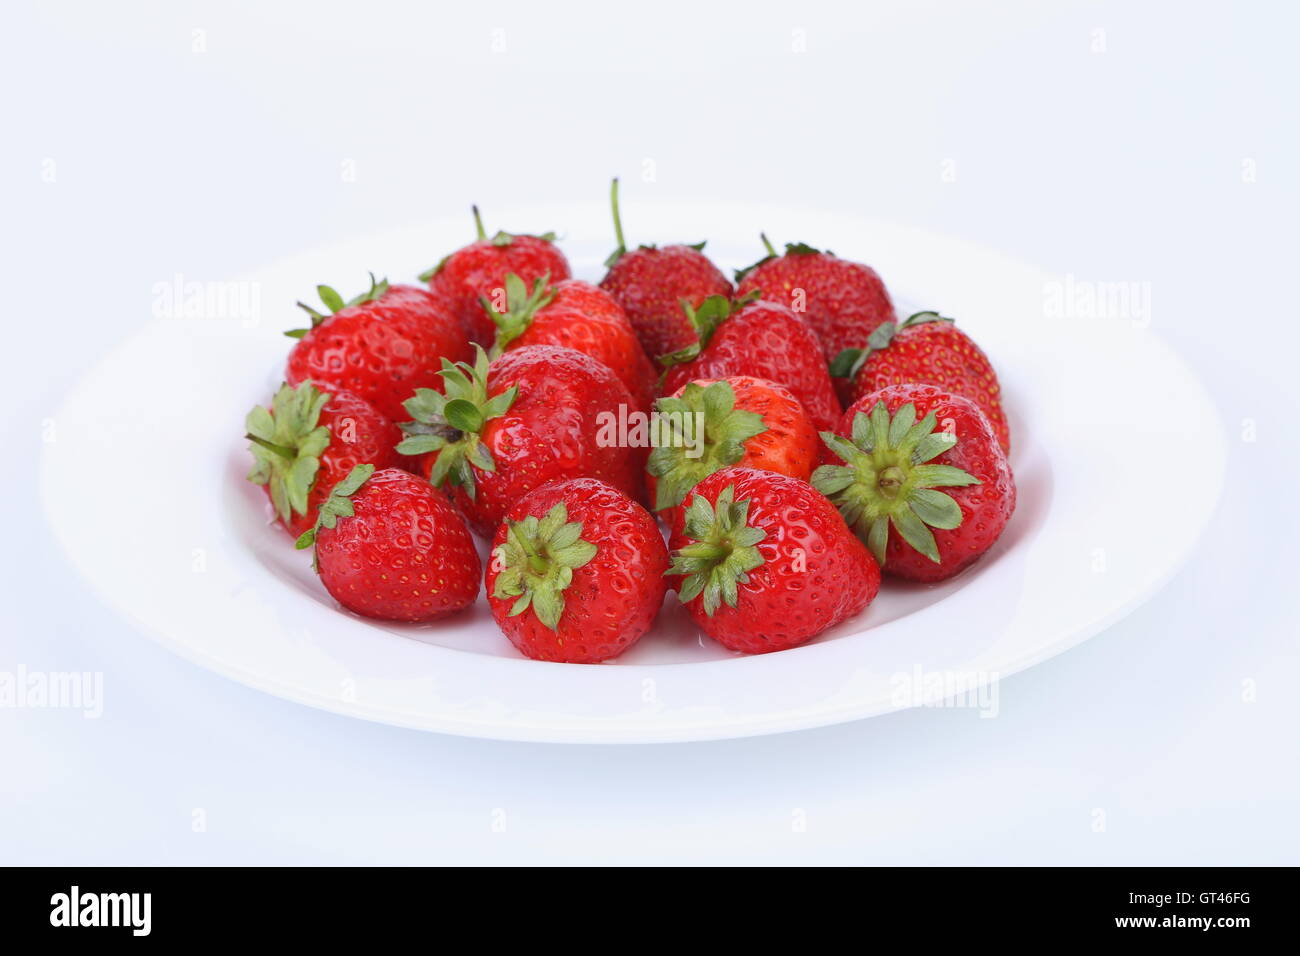 Les fraises mûres rouges frais sur une plaque blanche Banque D'Images